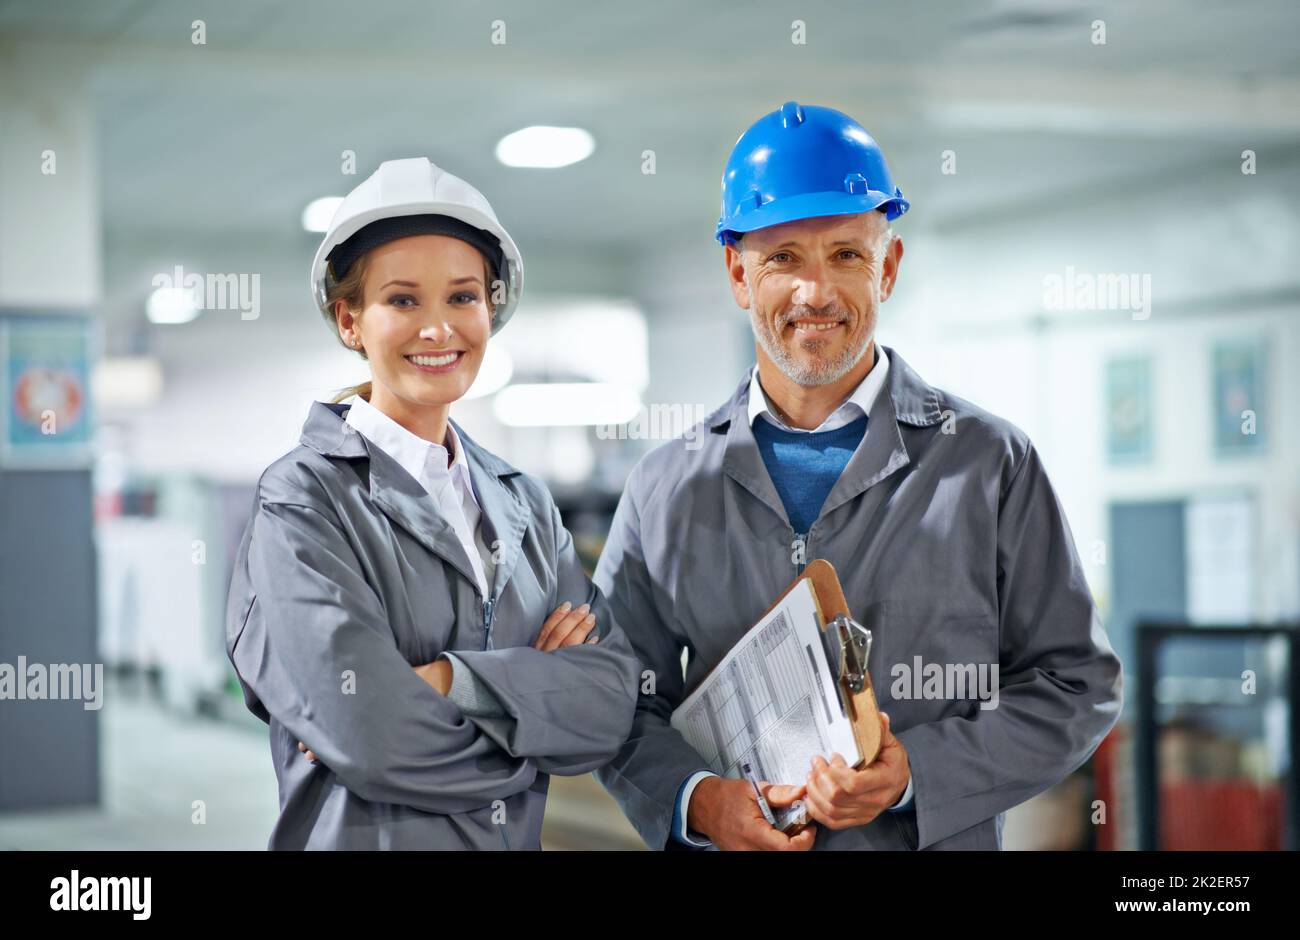 Heureux dans notre profession. Deux personnes portant des casques de sécurité souriant à la caméra dans une usine. Banque D'Images